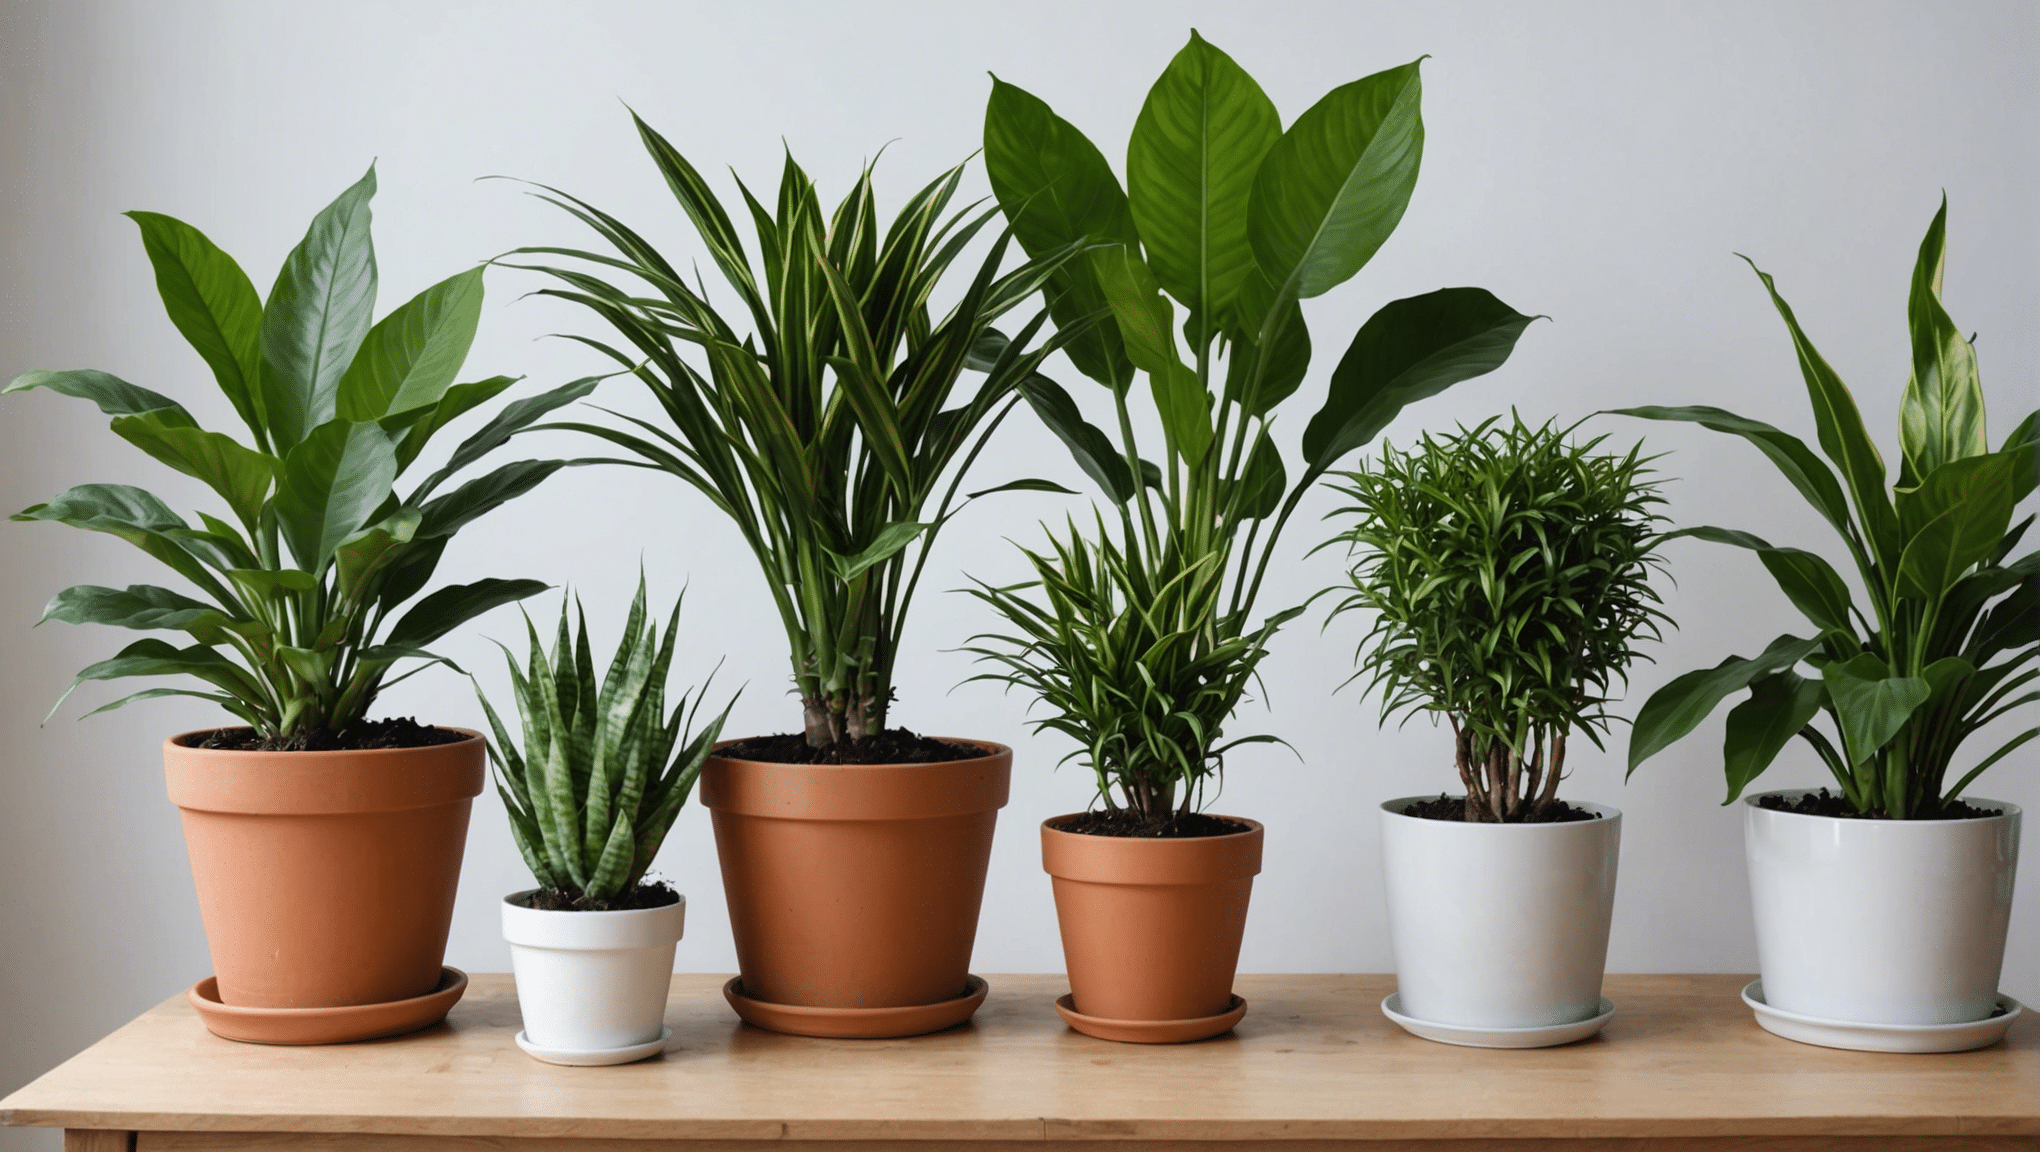 découvrez nos conseils pour entretenir au mieux vos plantes d'intérieur et leur offrir un environnement propice à leur épanouissement.